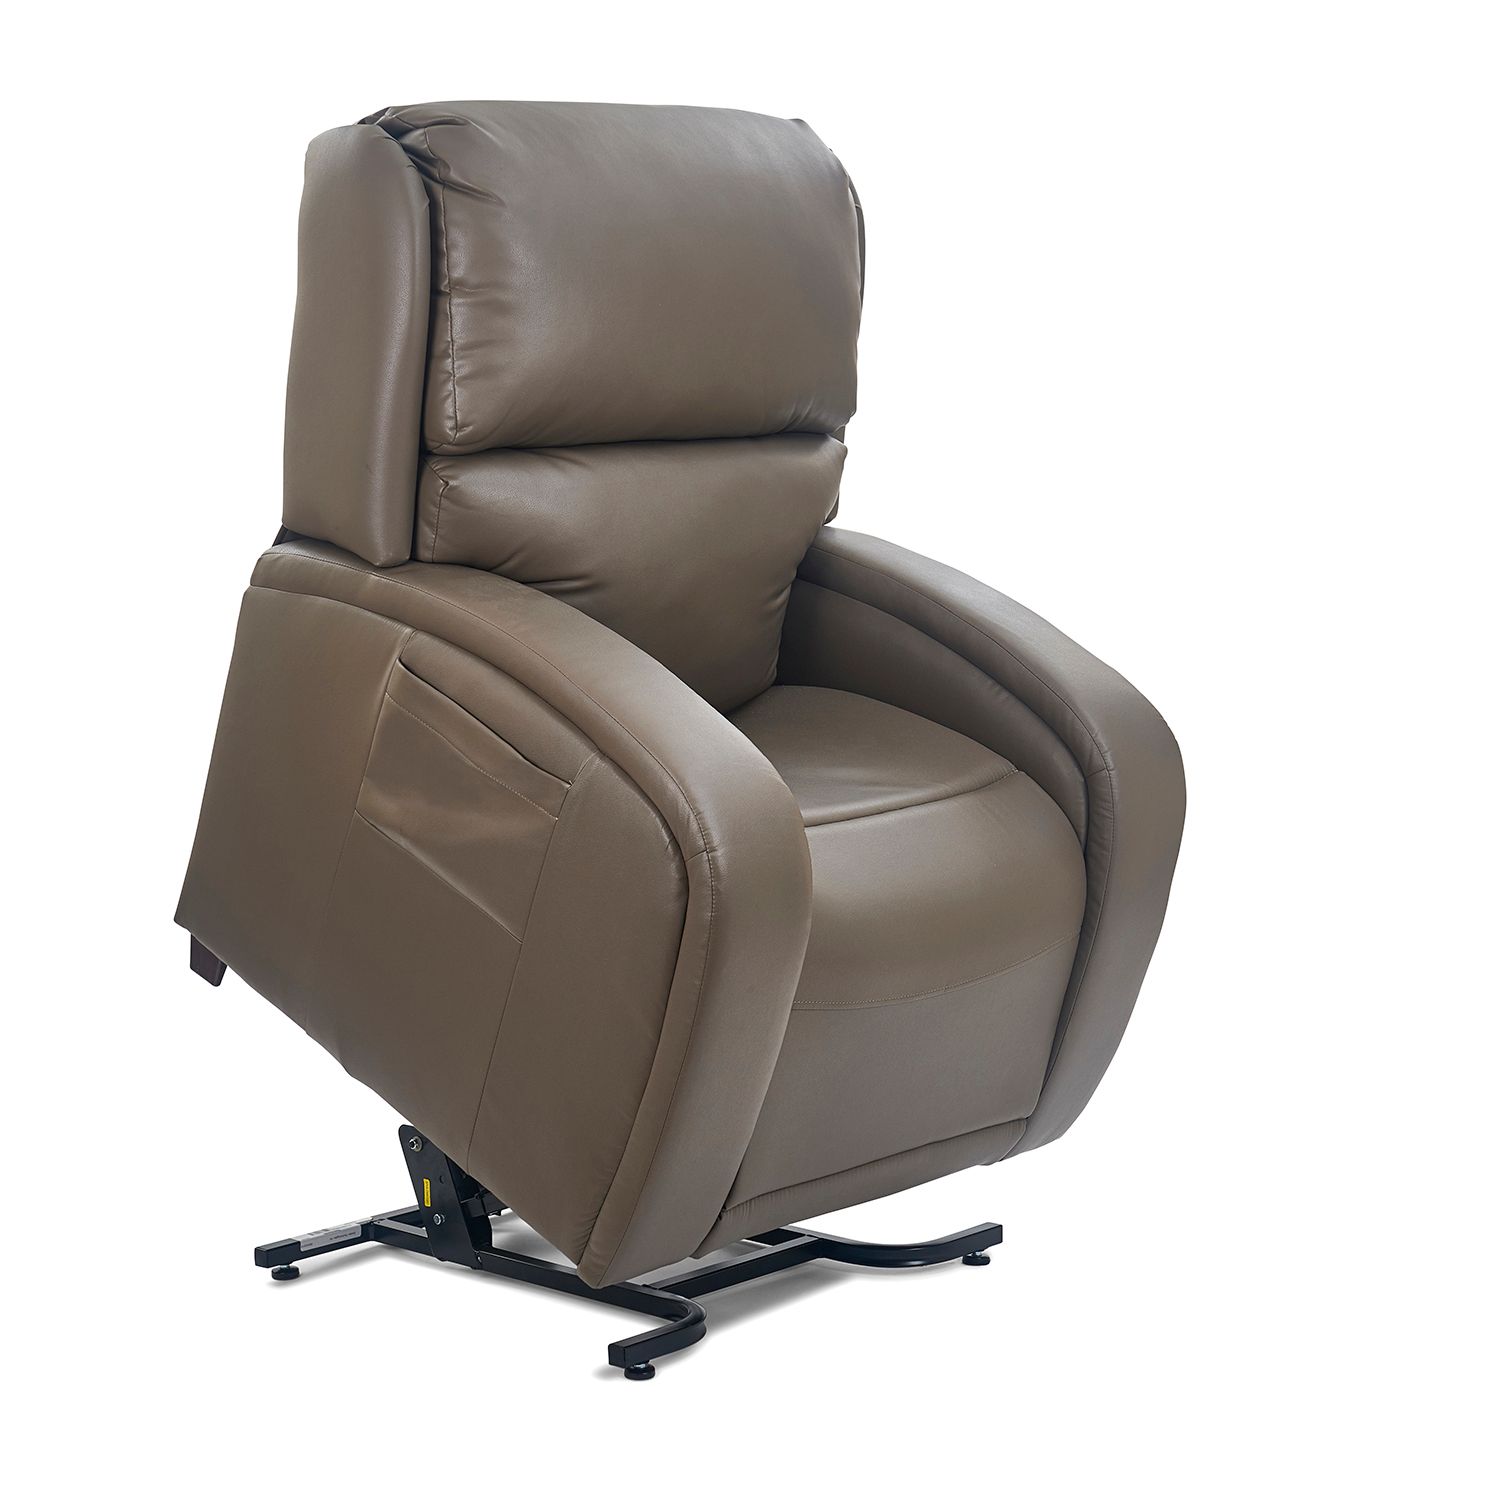 Temecula Golden Tech lift chair recliner twilight ezsleeper cloud viva relaxer maxi-comfort